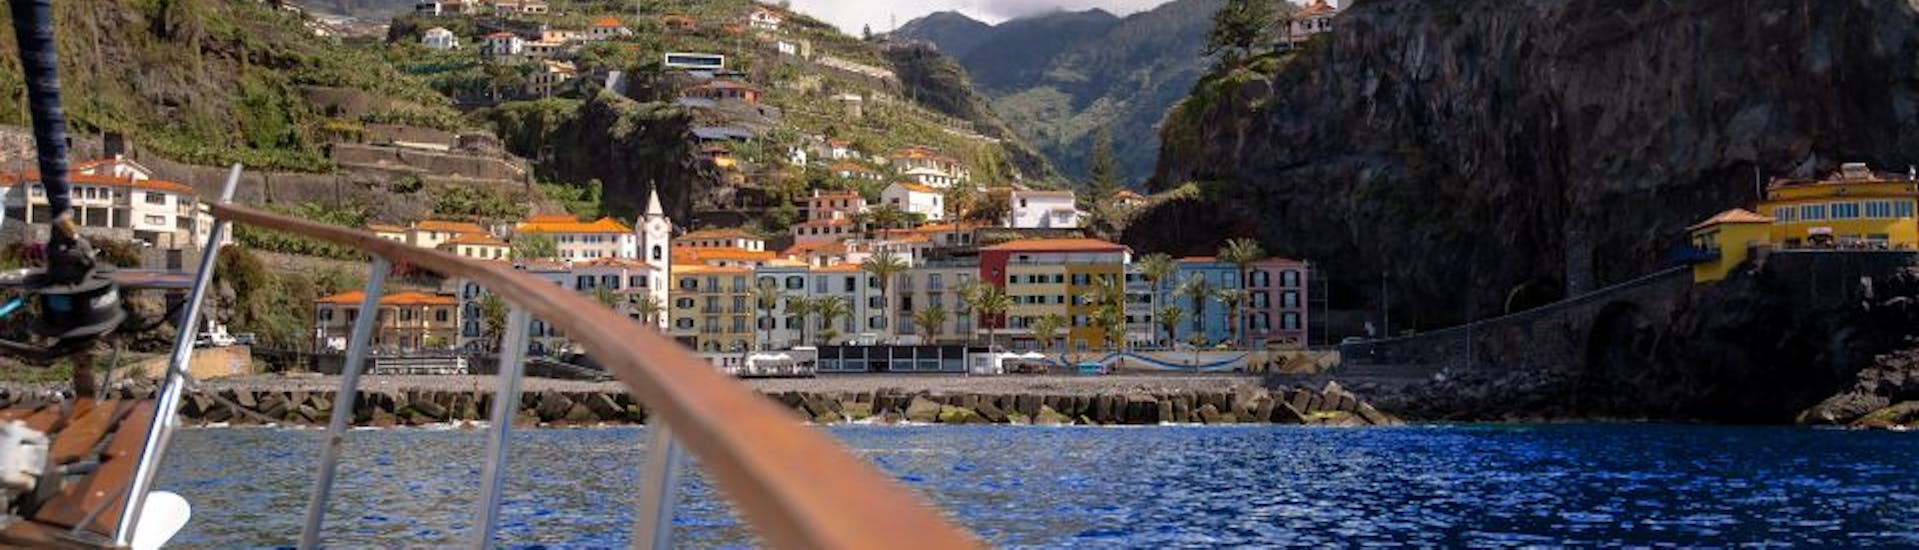 Gita privata in barca a vela da Funchal a Funchal  e bagno in mare.